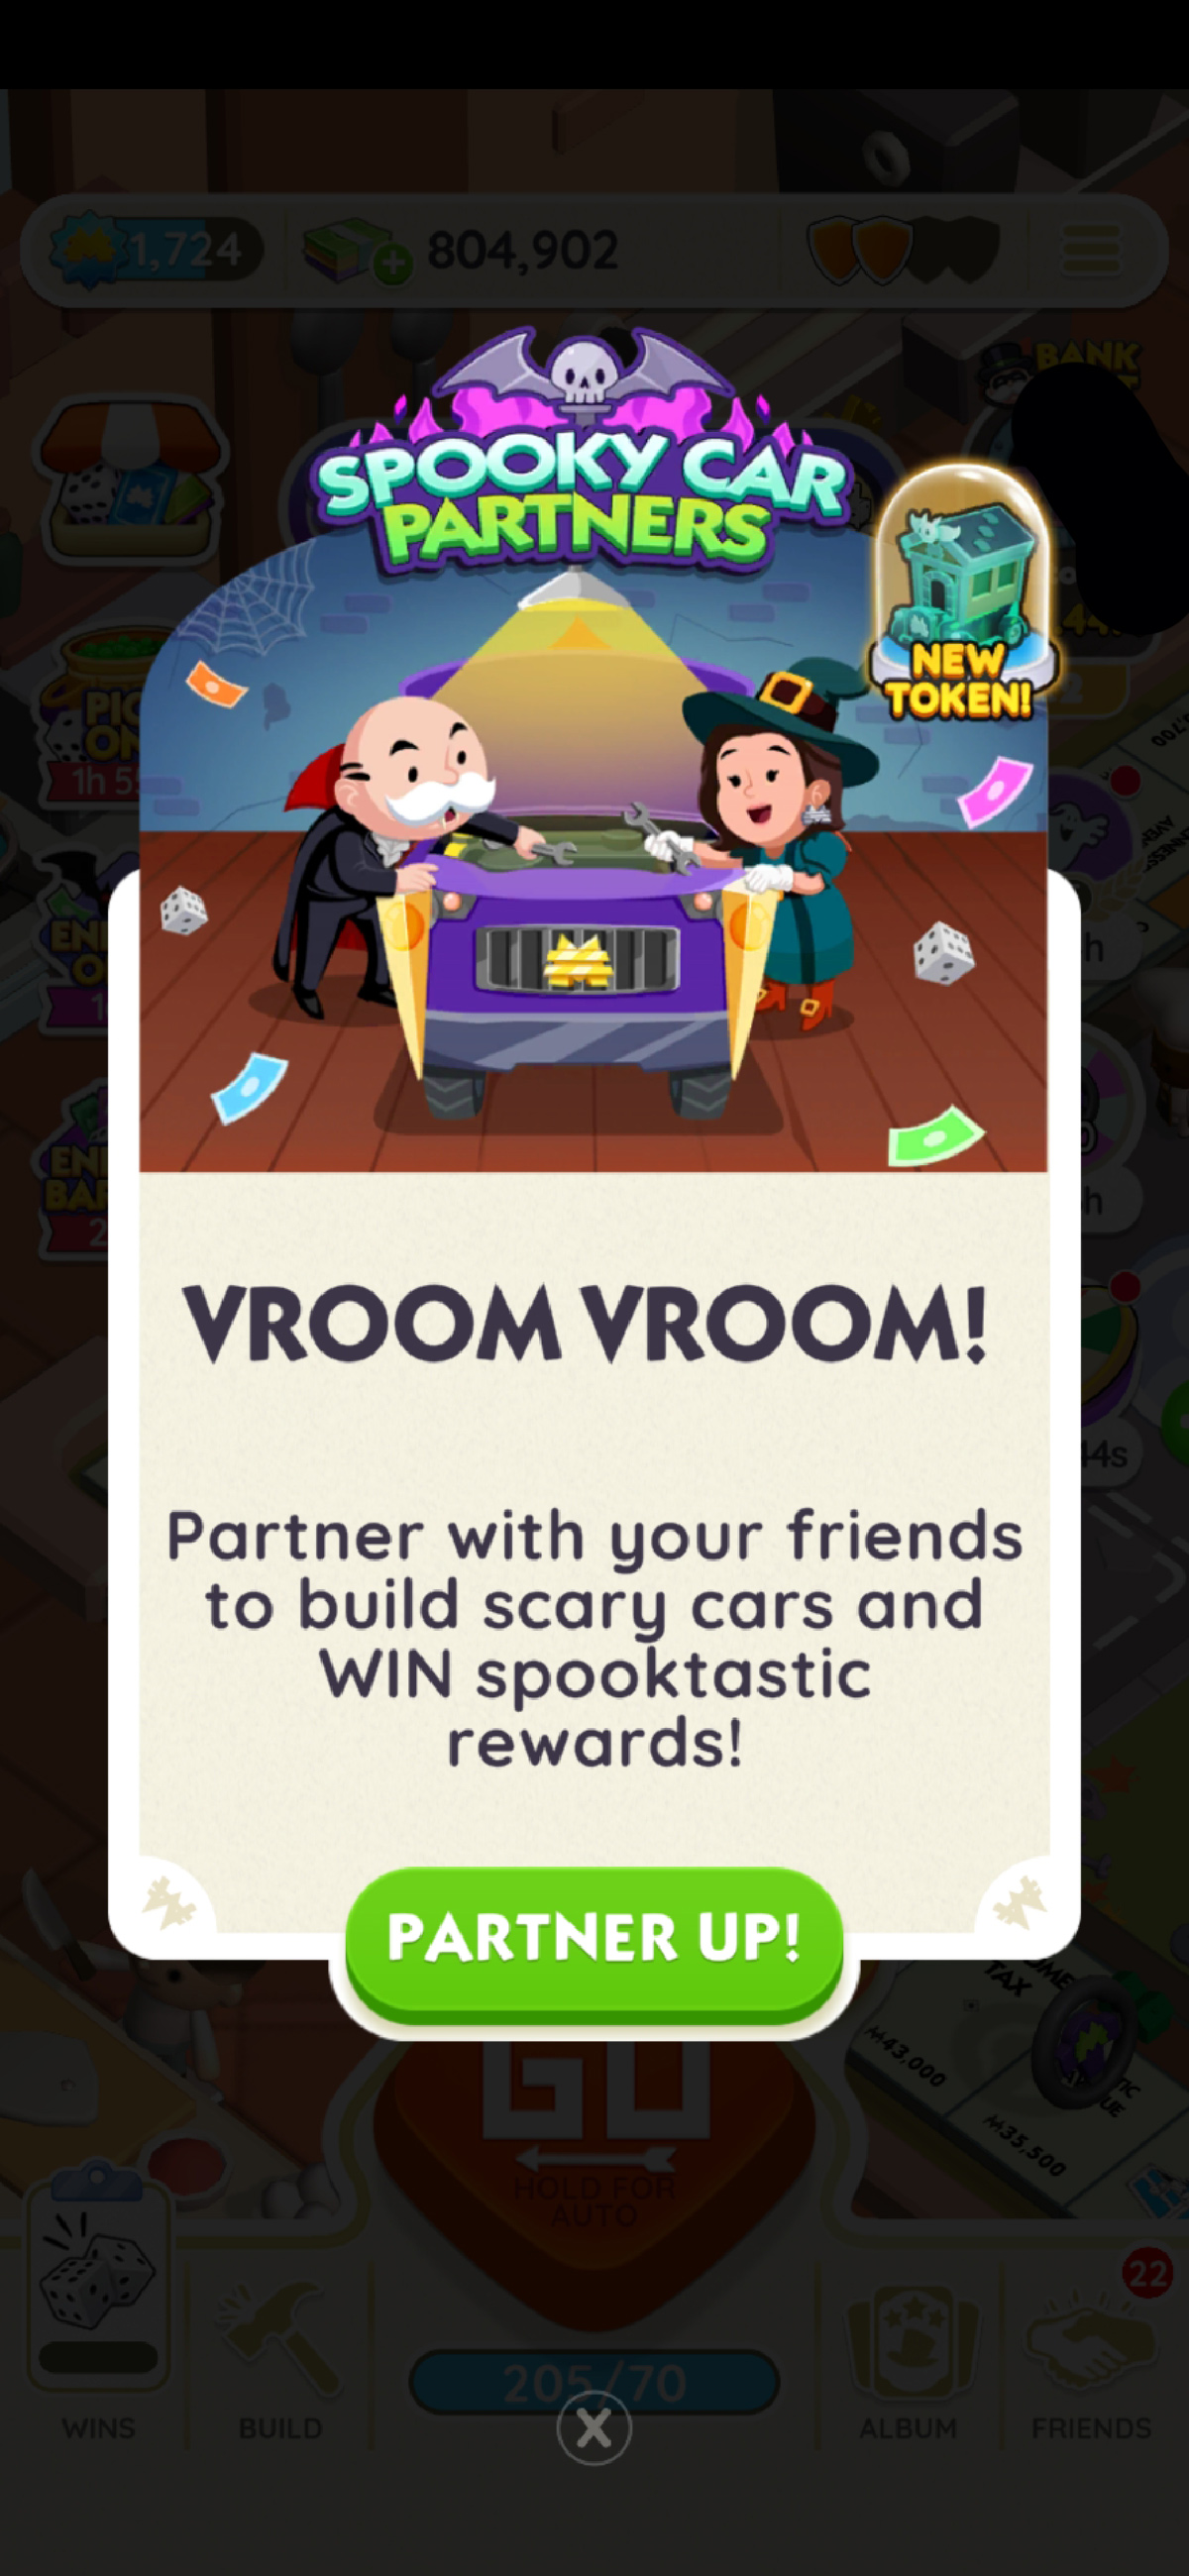 Une image de la bannière de Spooky Car Partners dans Monopoly GO montrant Oncle Pennybags et une sorcière regardant une voiture.